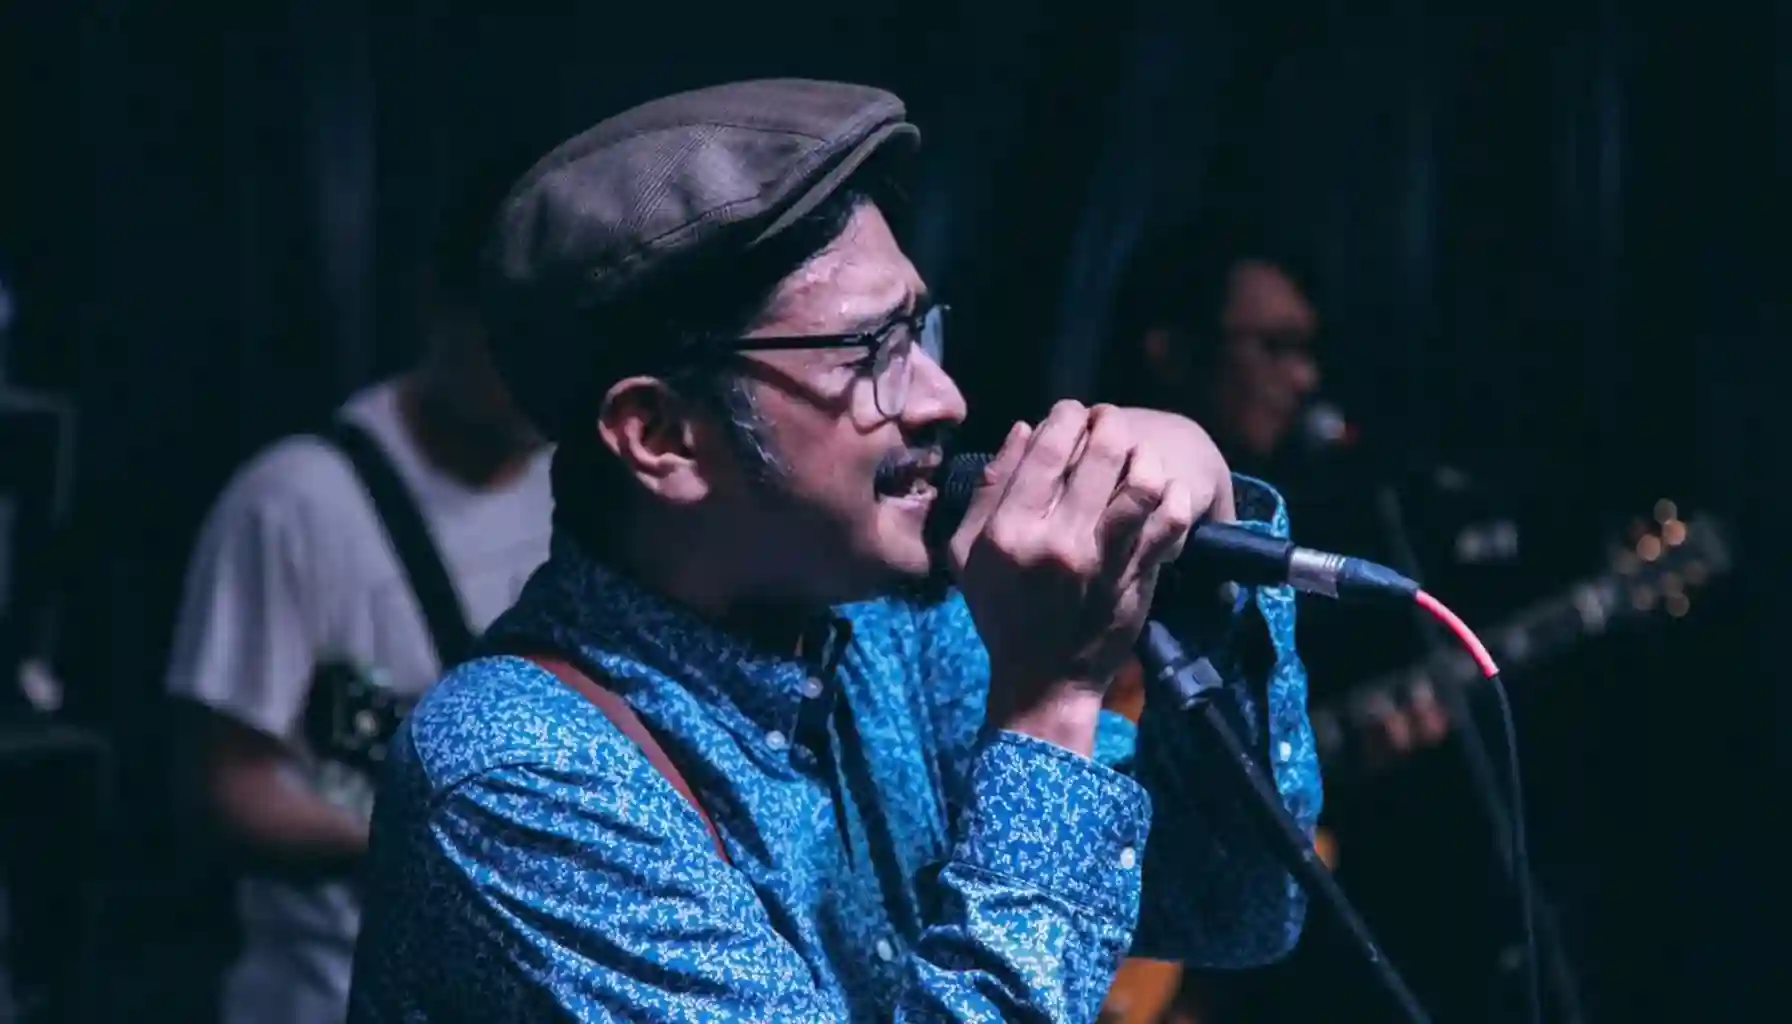 Kenang Ade Paloh, sosok pengayom di musik indie. Semangat dan kontribusinya menginspirasi generasi musisi baru di Indonesia.